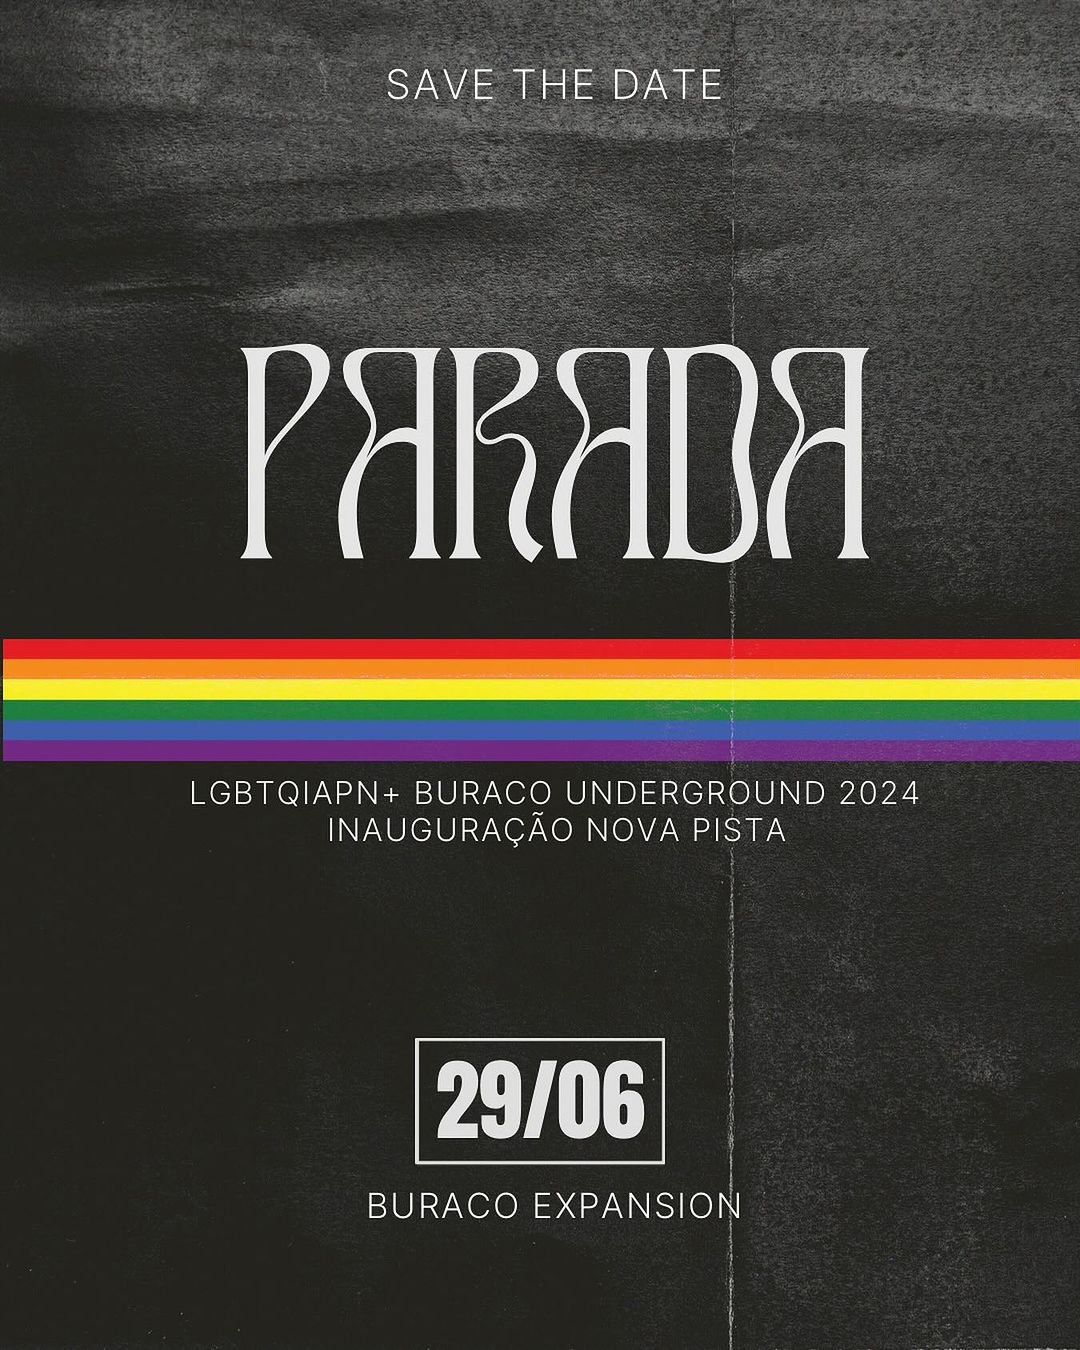 Parada LGBTQIAPN+ Buraco 2024" - Reprodução/Instagram